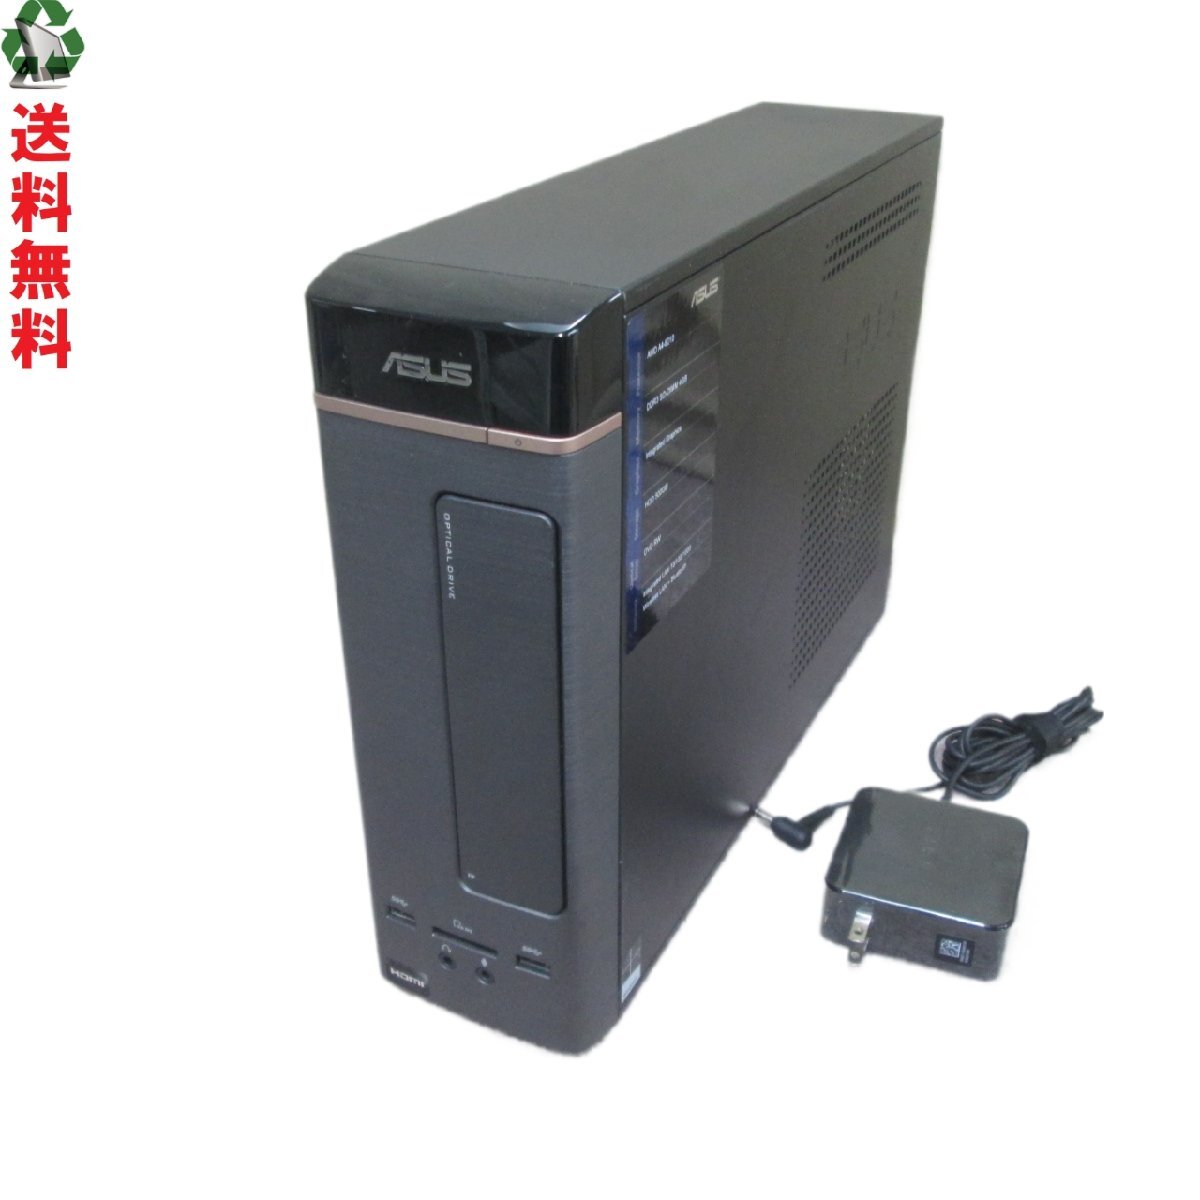 ASUS K20DA-A46210[AMD] 2980 иен единообразие источник питания вход возможно тонкий type USB3.0 HDMI Junk бесплатная доставка [89220]